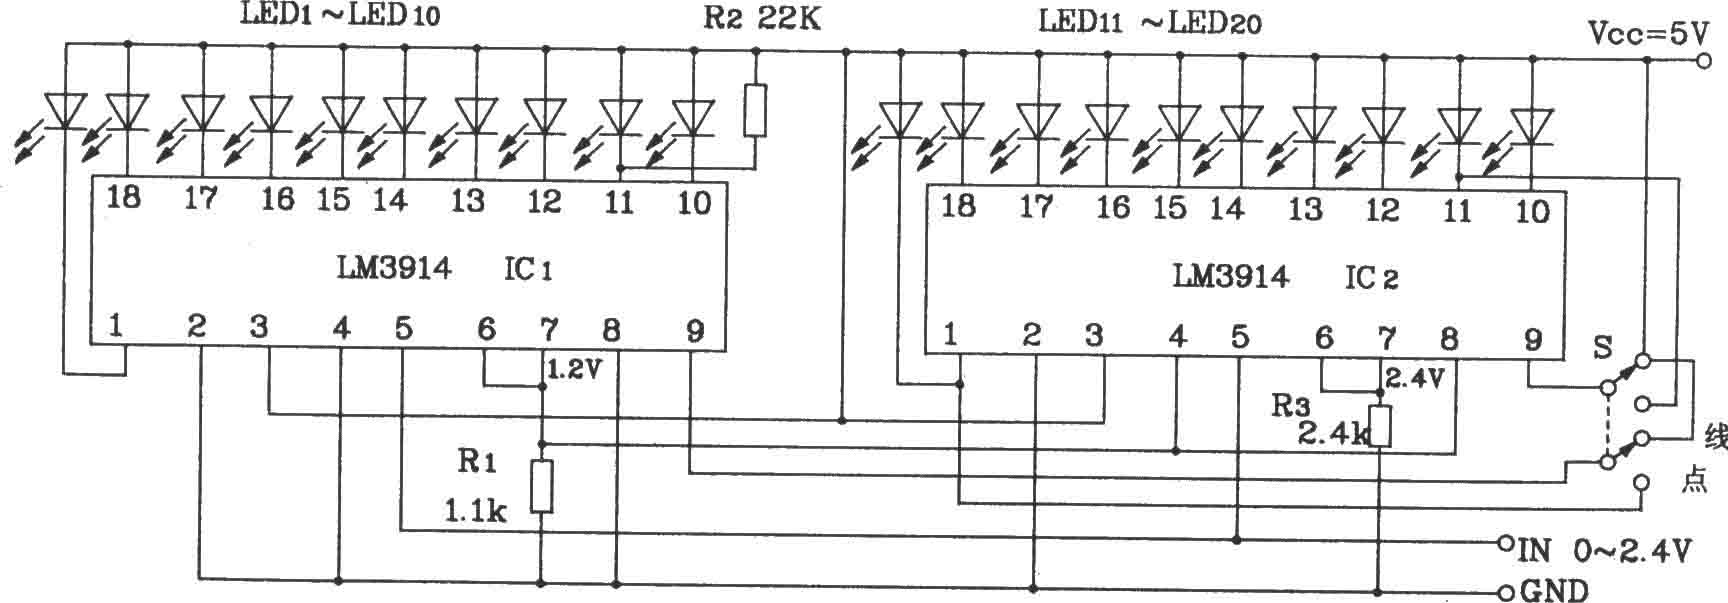 两块LM3914构成的20位LED点/线转换显示电路图